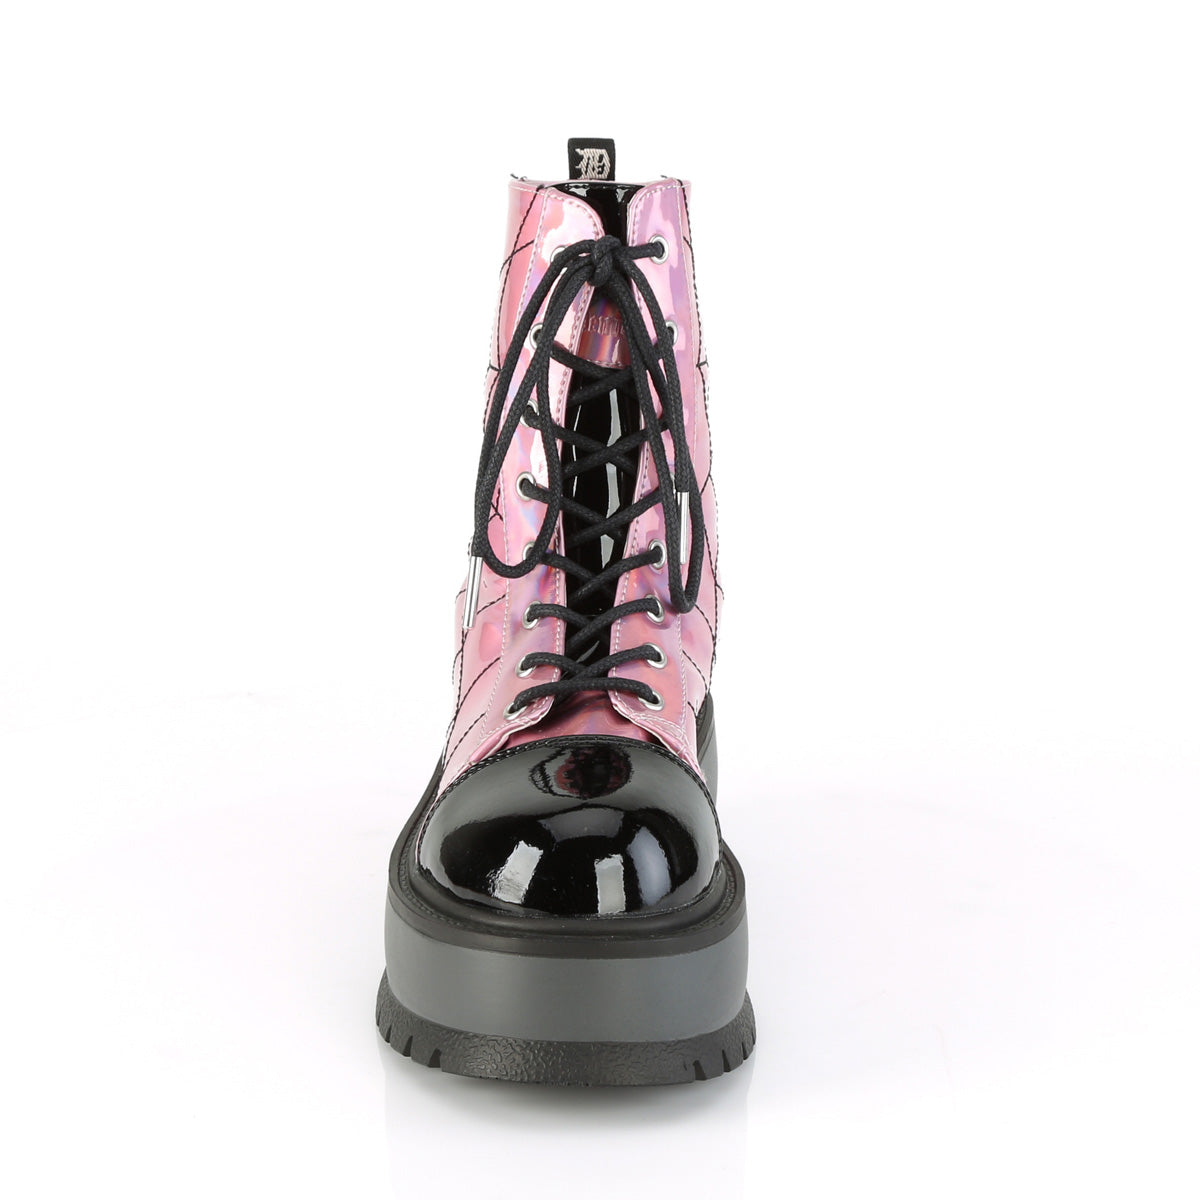 Spider Web Platform Boots Hologram Pink